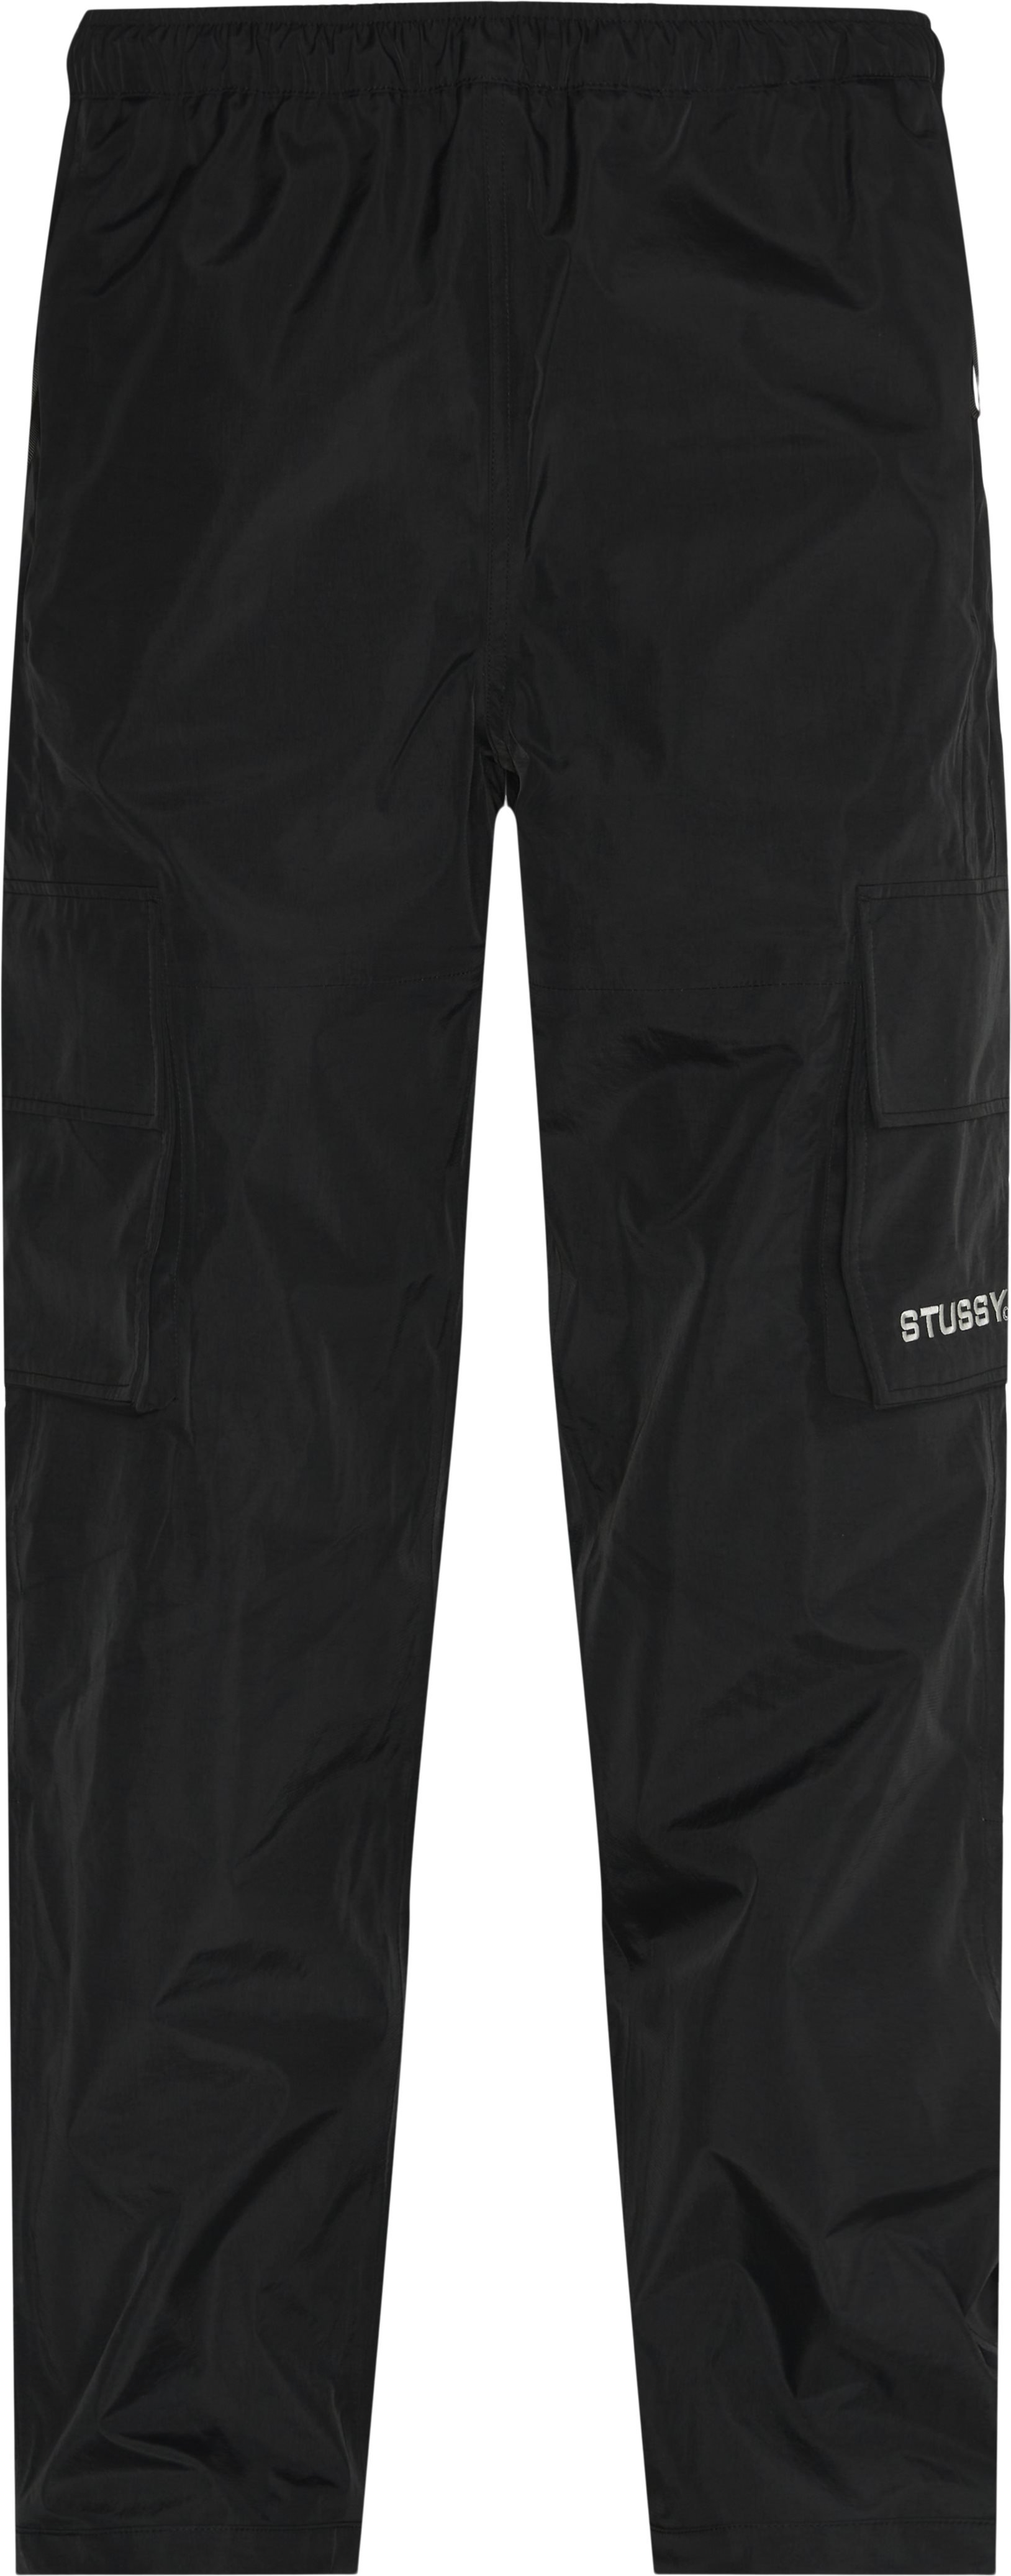 Apex Pant - Trousers - Regular fit - Black